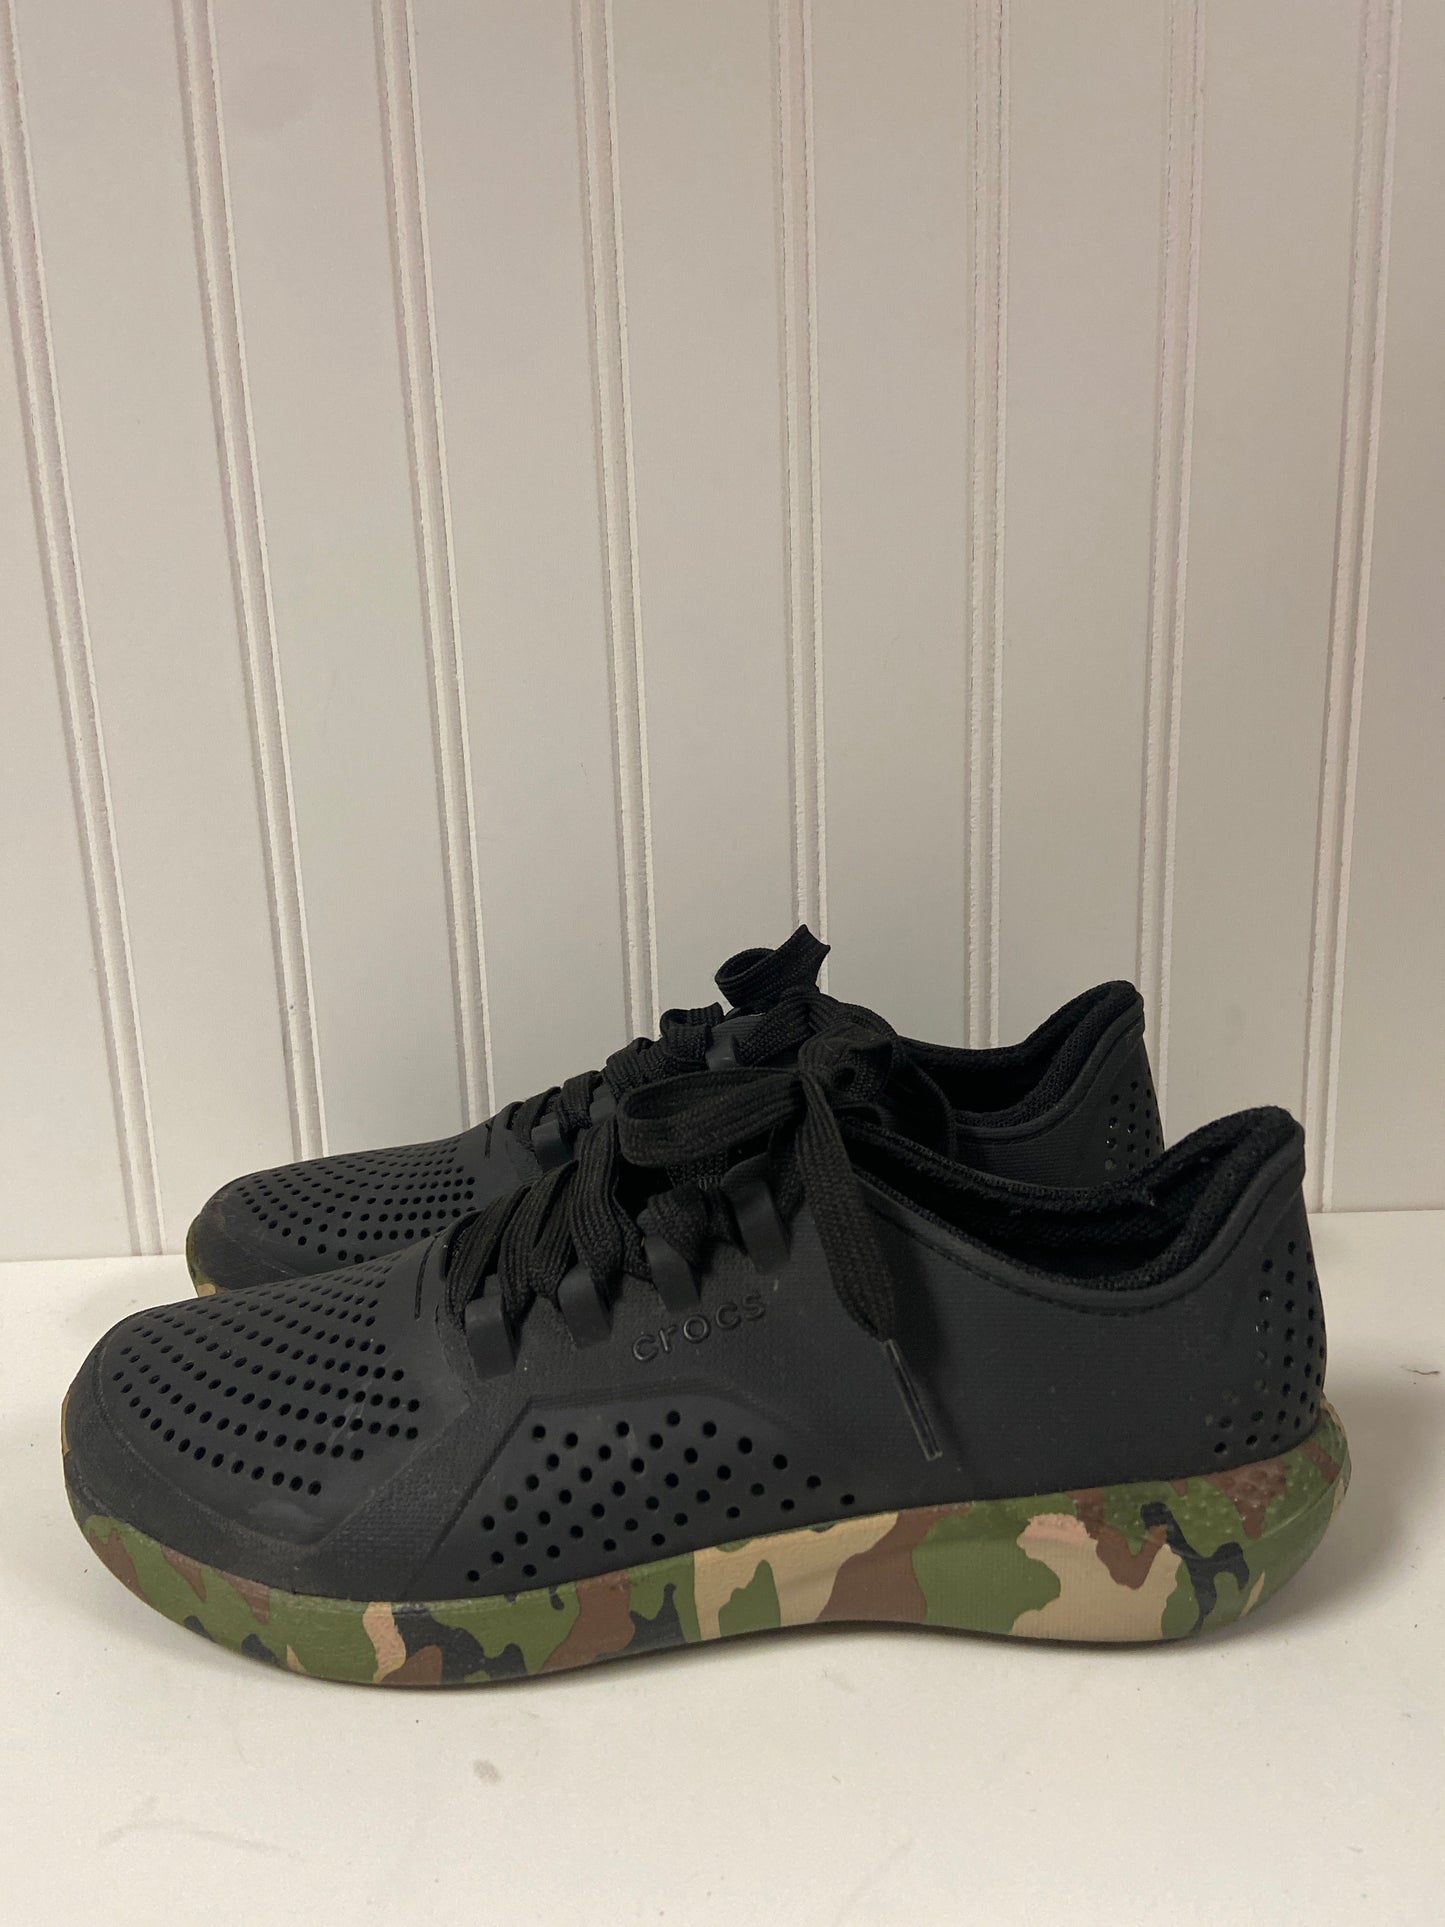 Black Shoes Athletic Crocs, Size 7